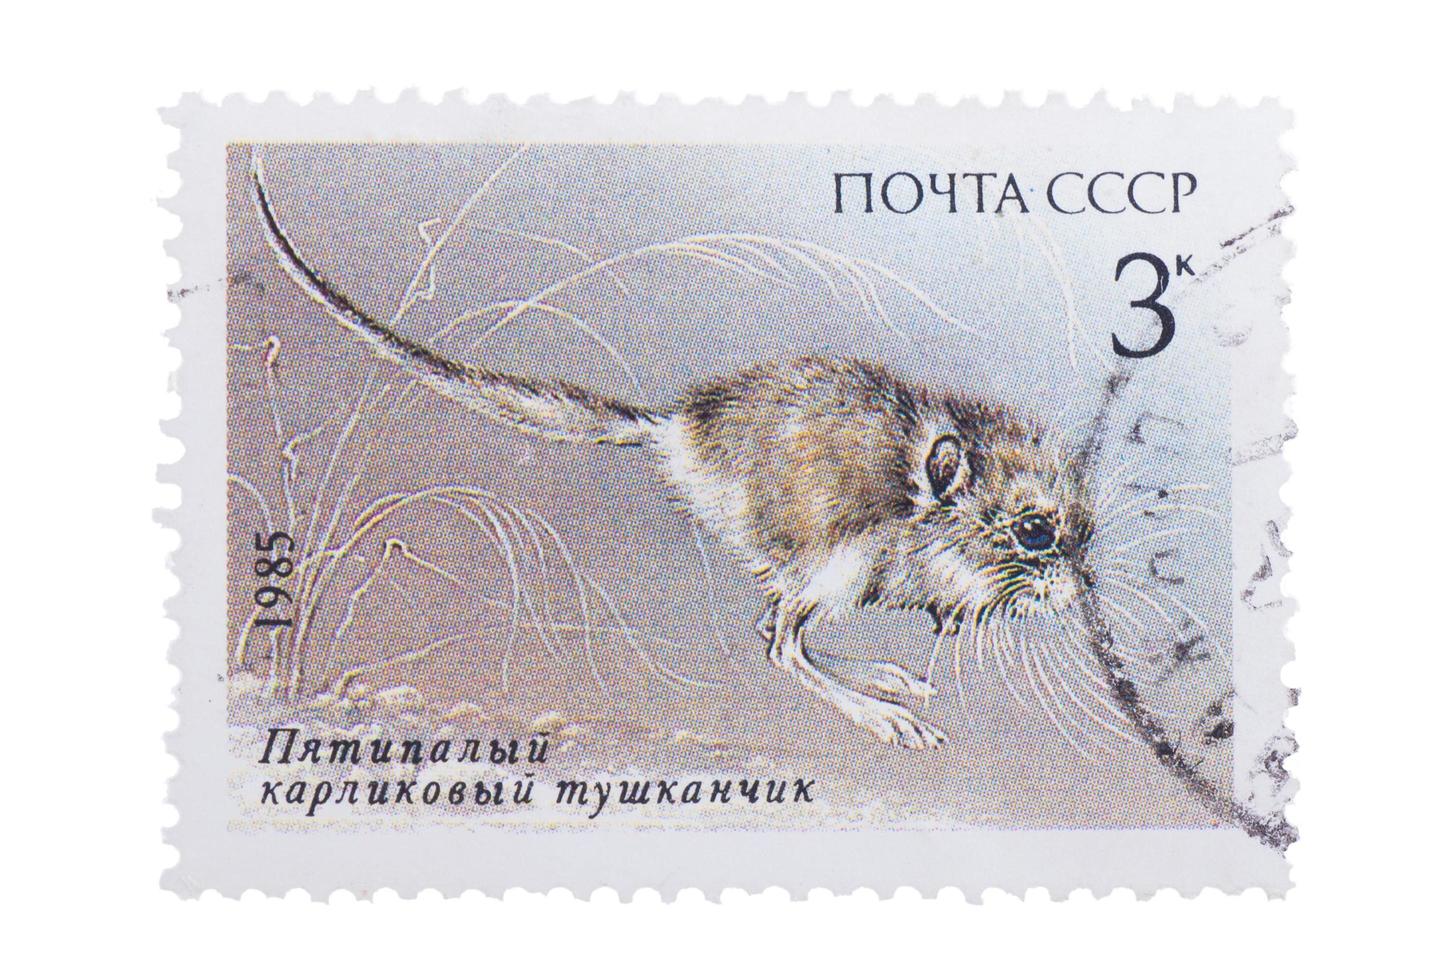 UdSSR - ca. 1985. Eine in gedruckte Briefmarke zeigt ein Bild von Pygmäen foto